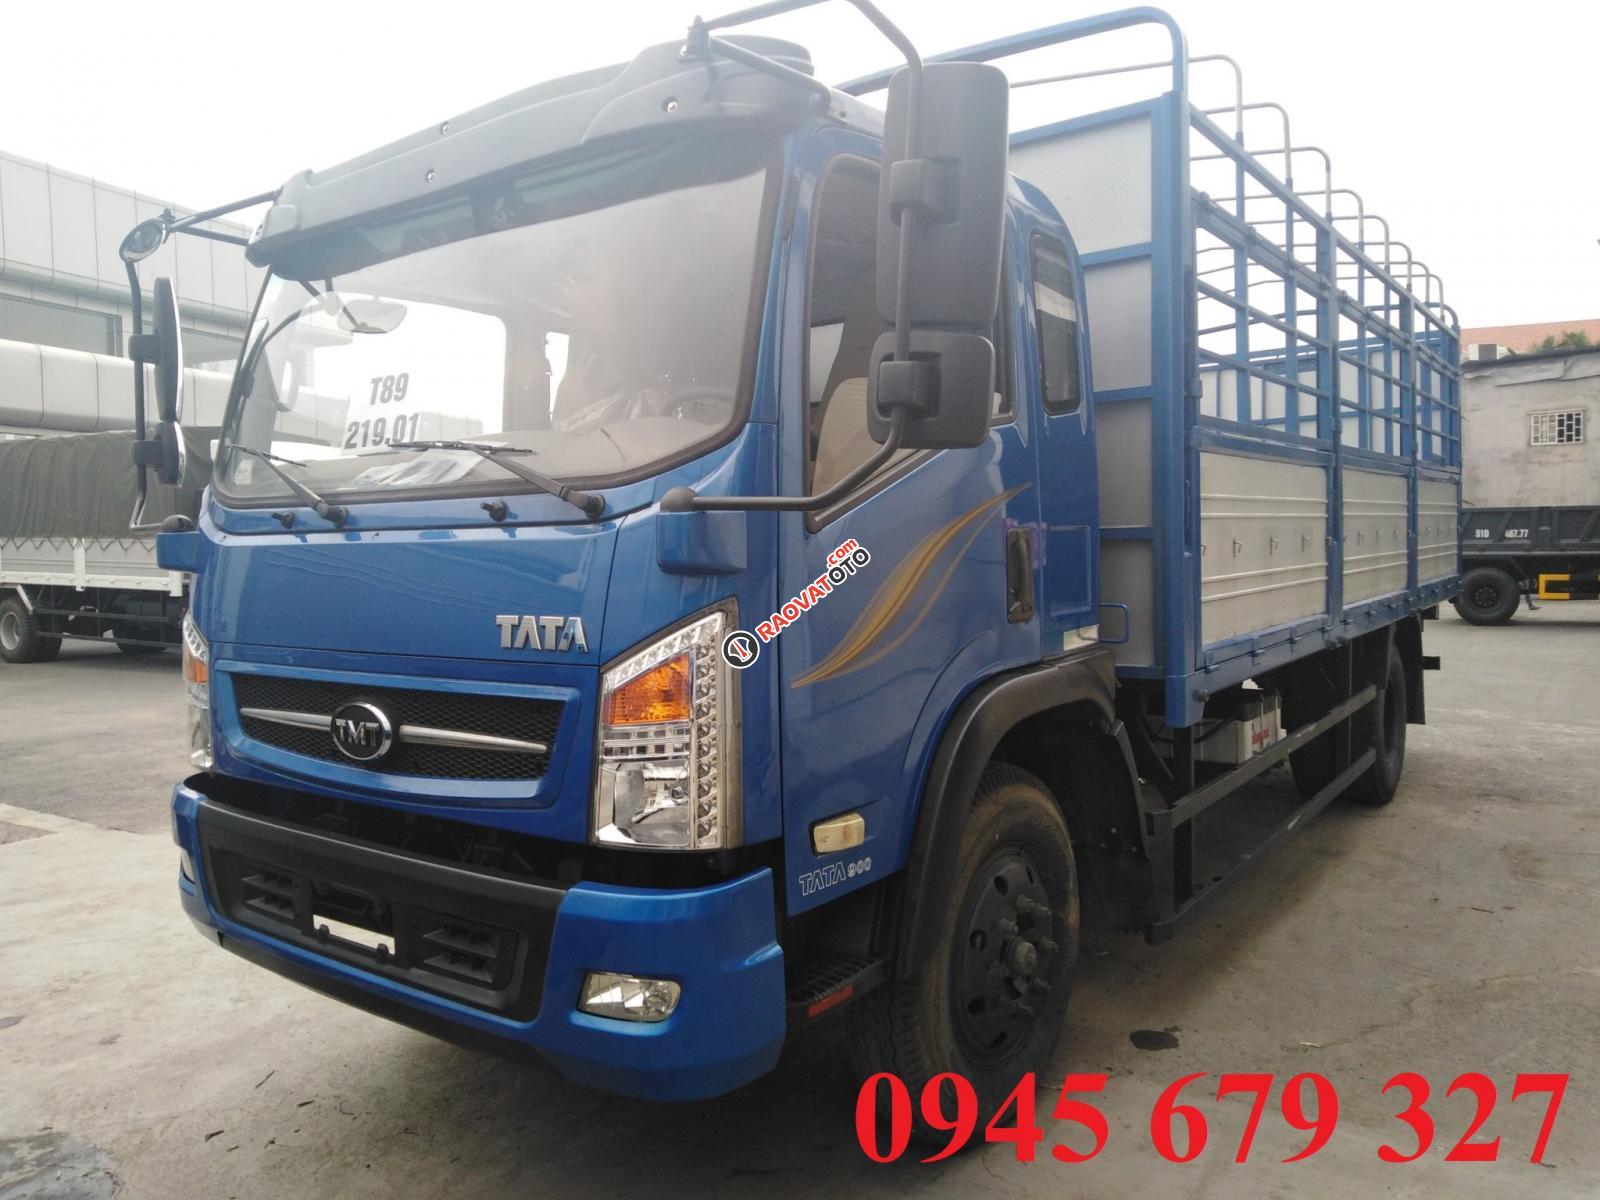 Thanh lý xe tải Tata 7 tấn thùng 5m3 ga cơ, trả trước 180 triệu nhận xe-3